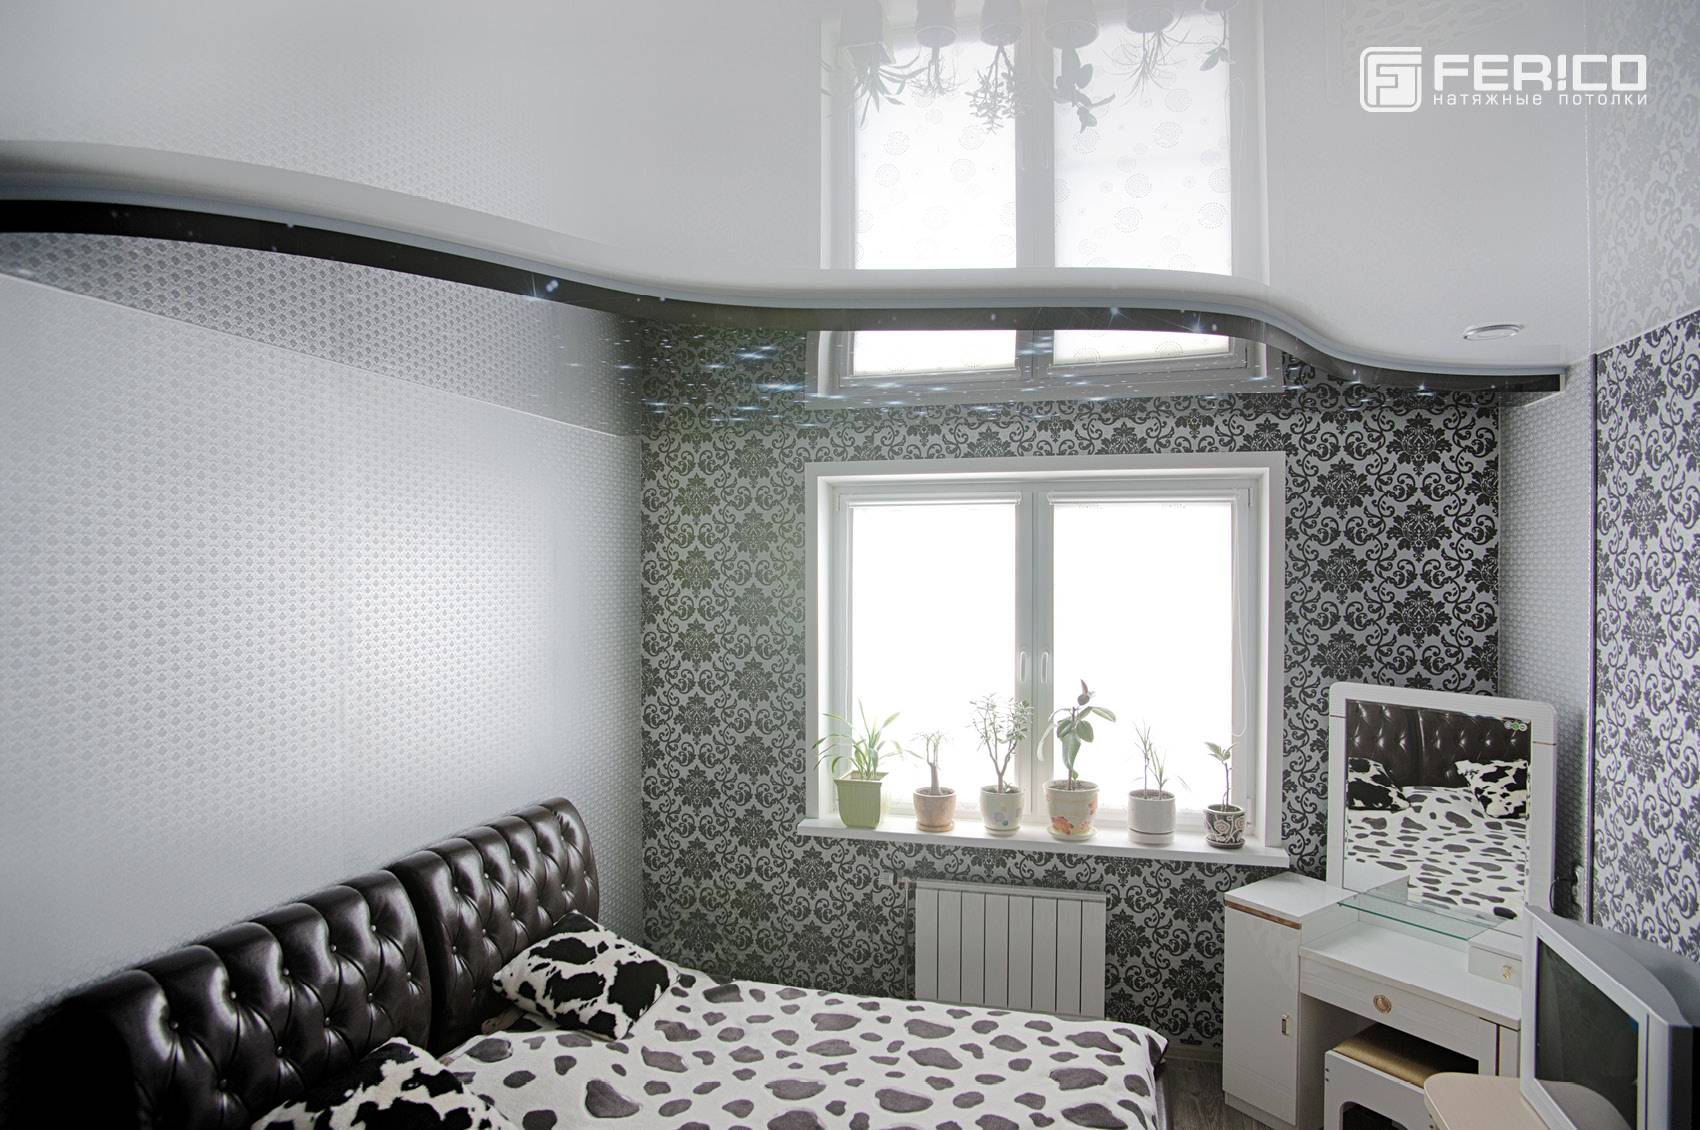 Особенности и варианты освещения спальни с натяжными потолками